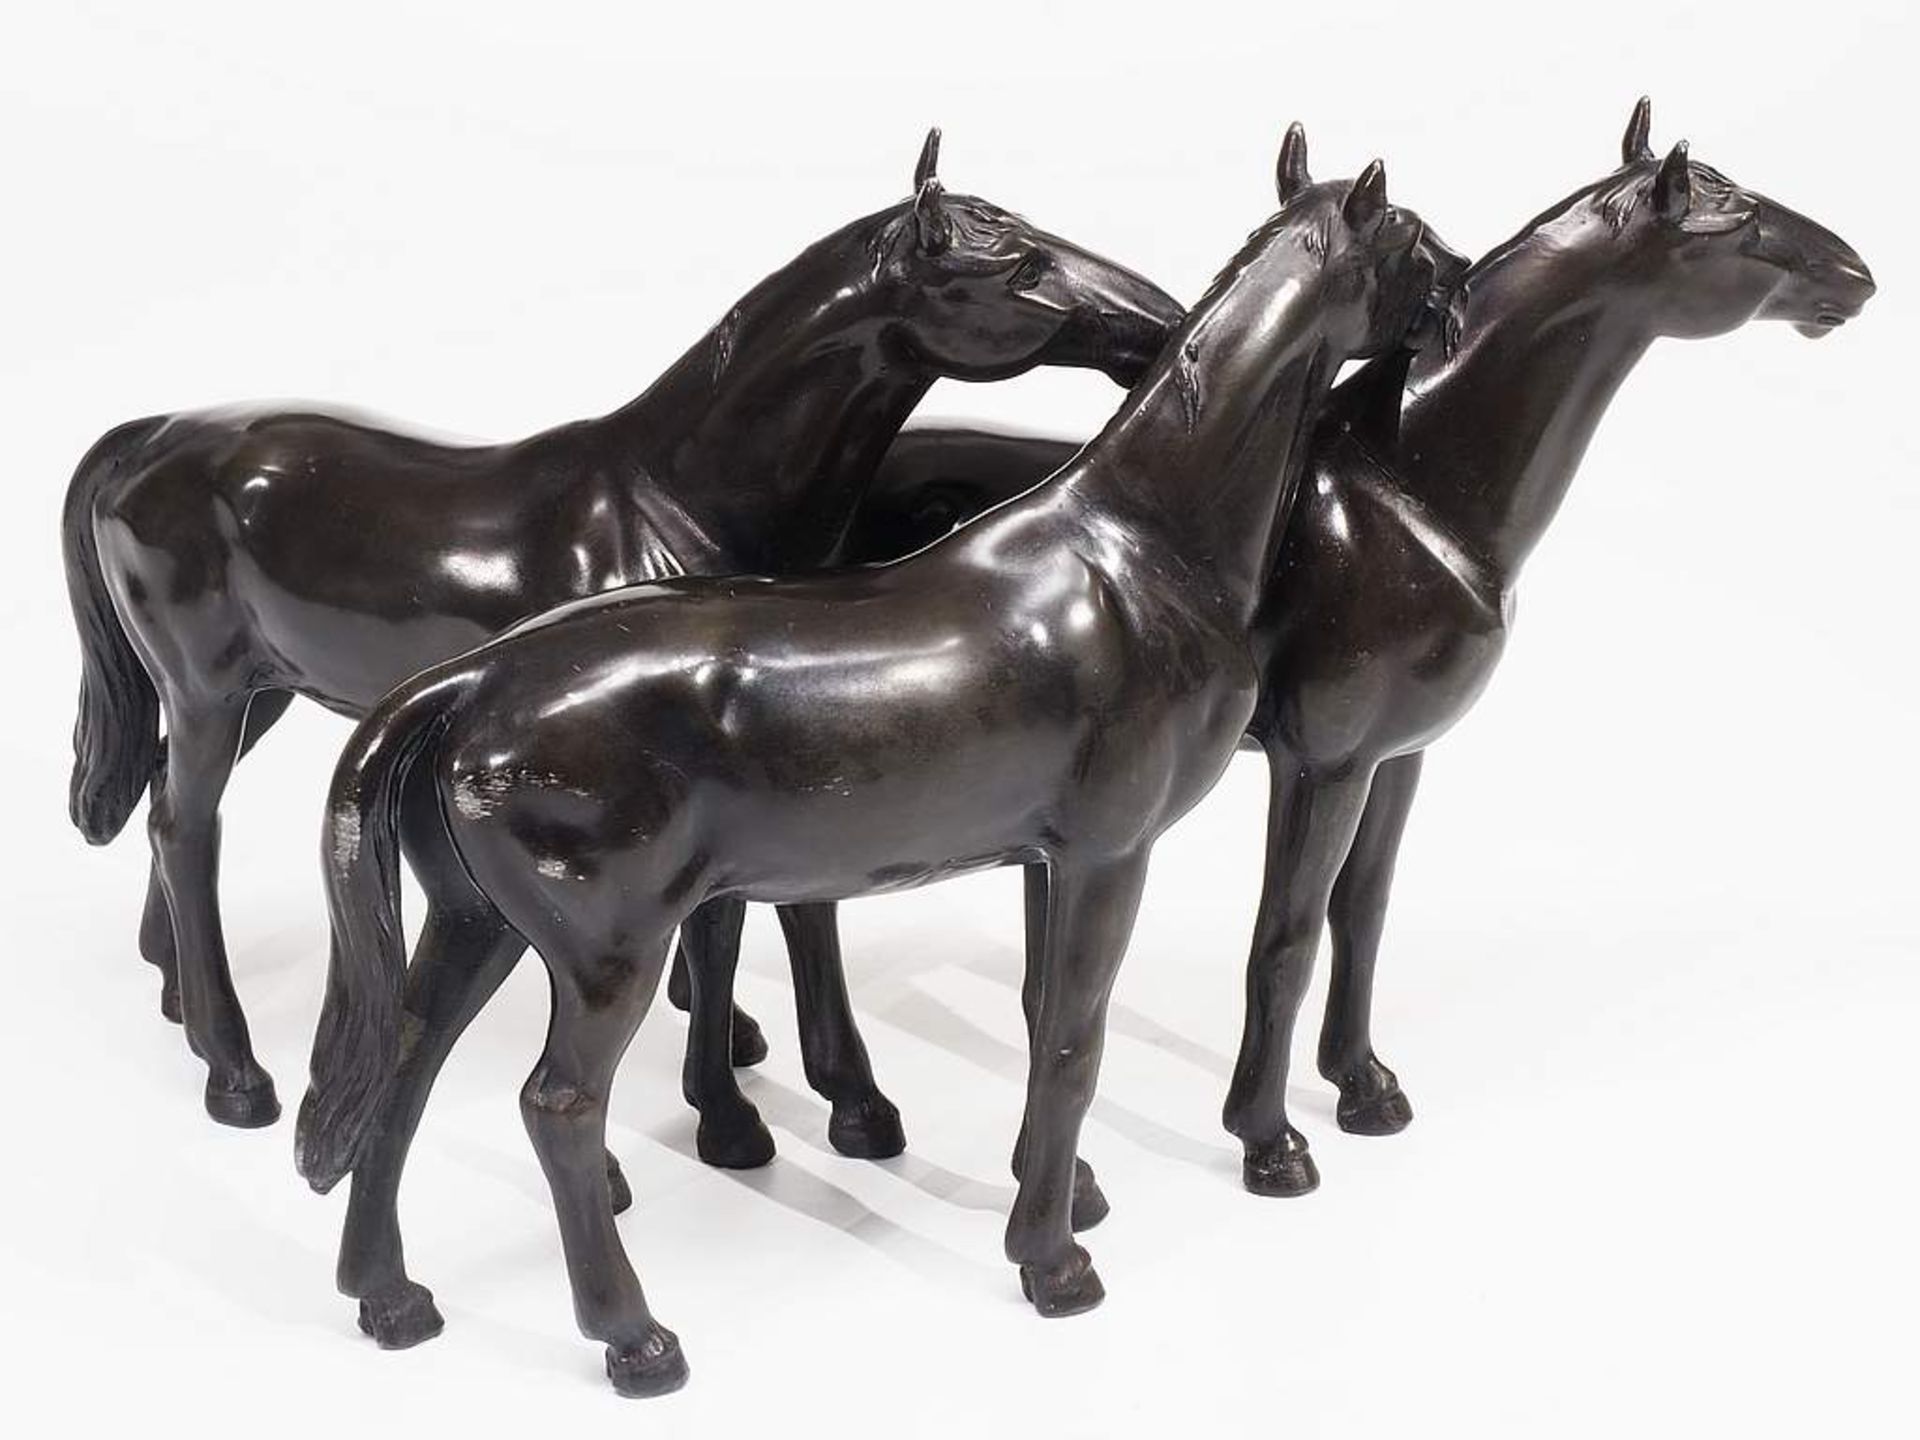 Dreier Pferdegruppe.Dreier Pferdegruppe. Um 1940/50, vermutlich Messing (nicht magnetisch),Dreier - Image 3 of 6